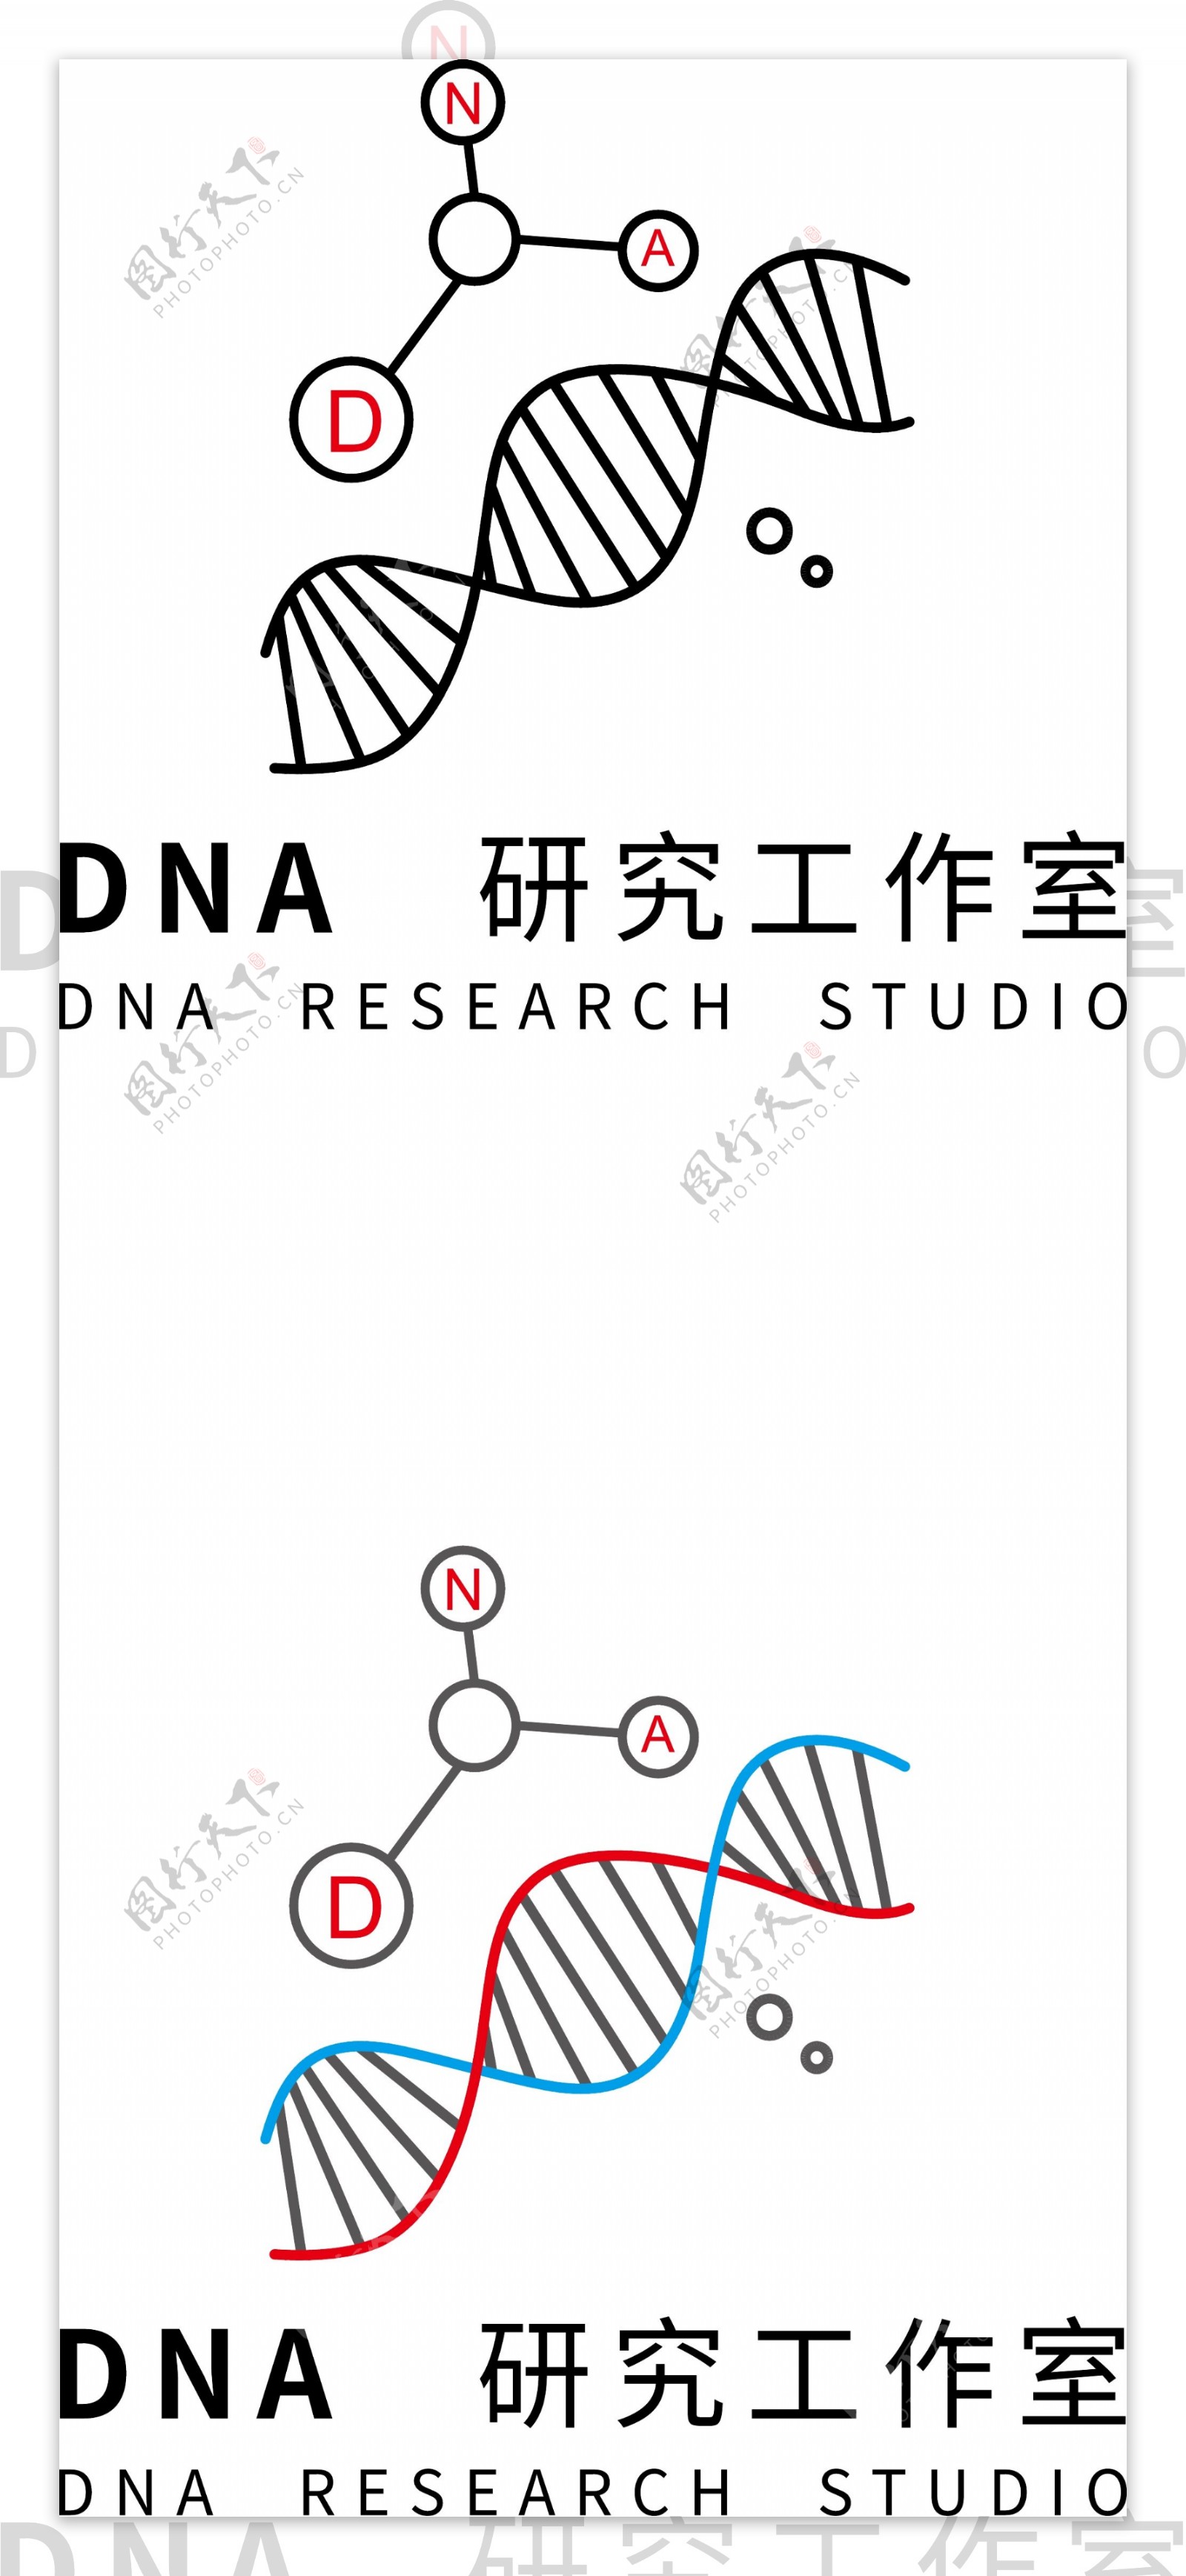 DNA研究工作室